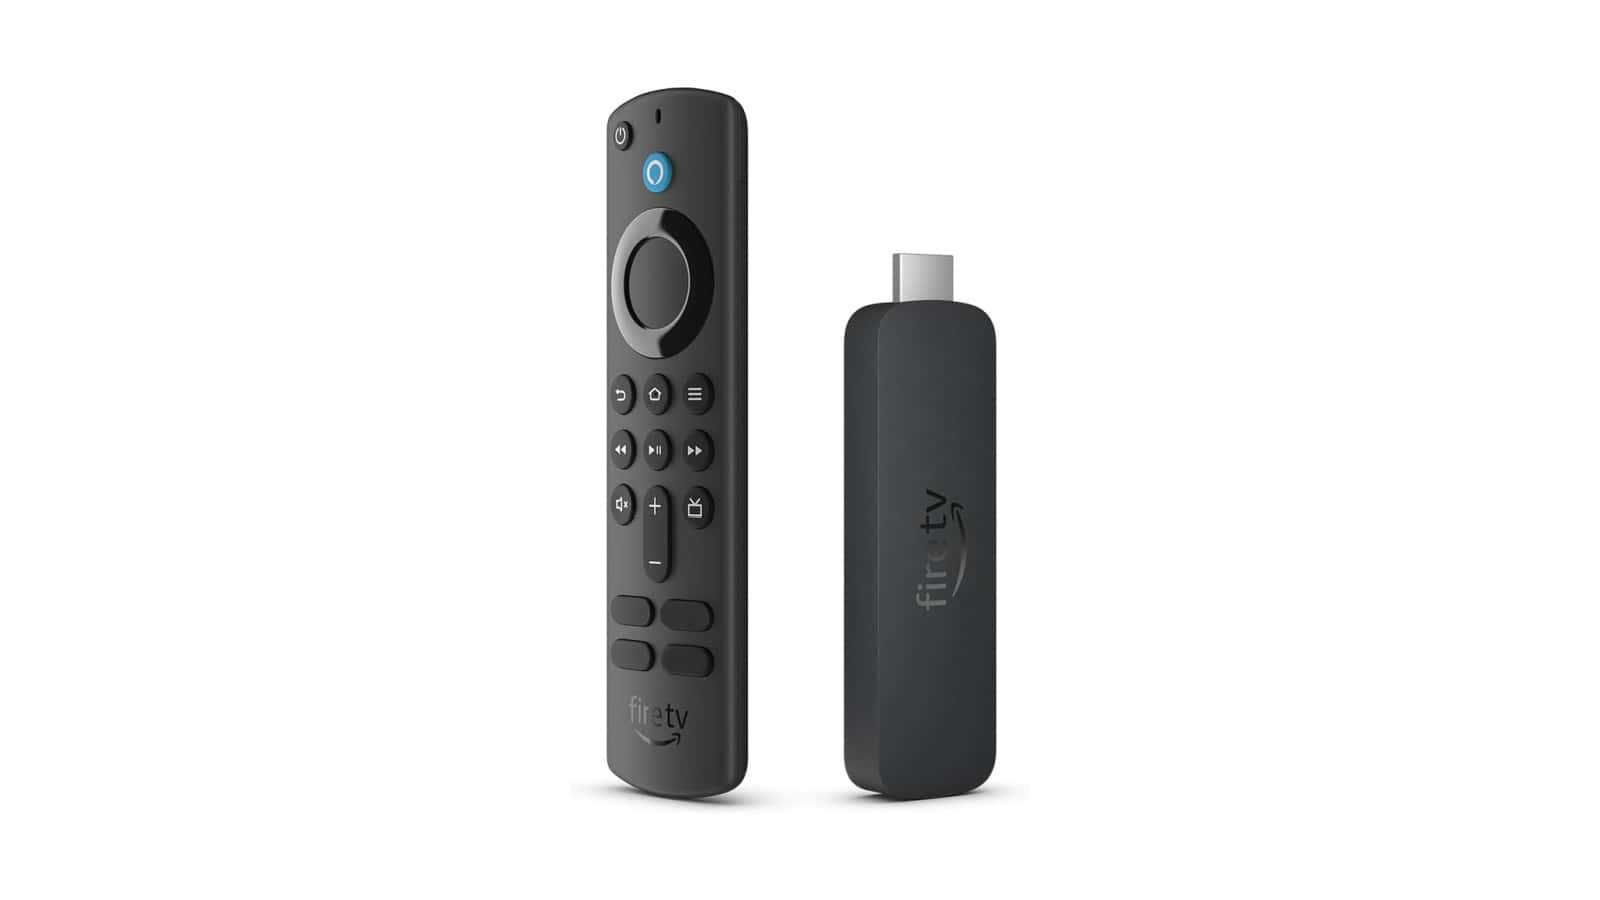 Consigue el Fire TV Stick 4K más nuevo de Amazon con un 30% de descuento